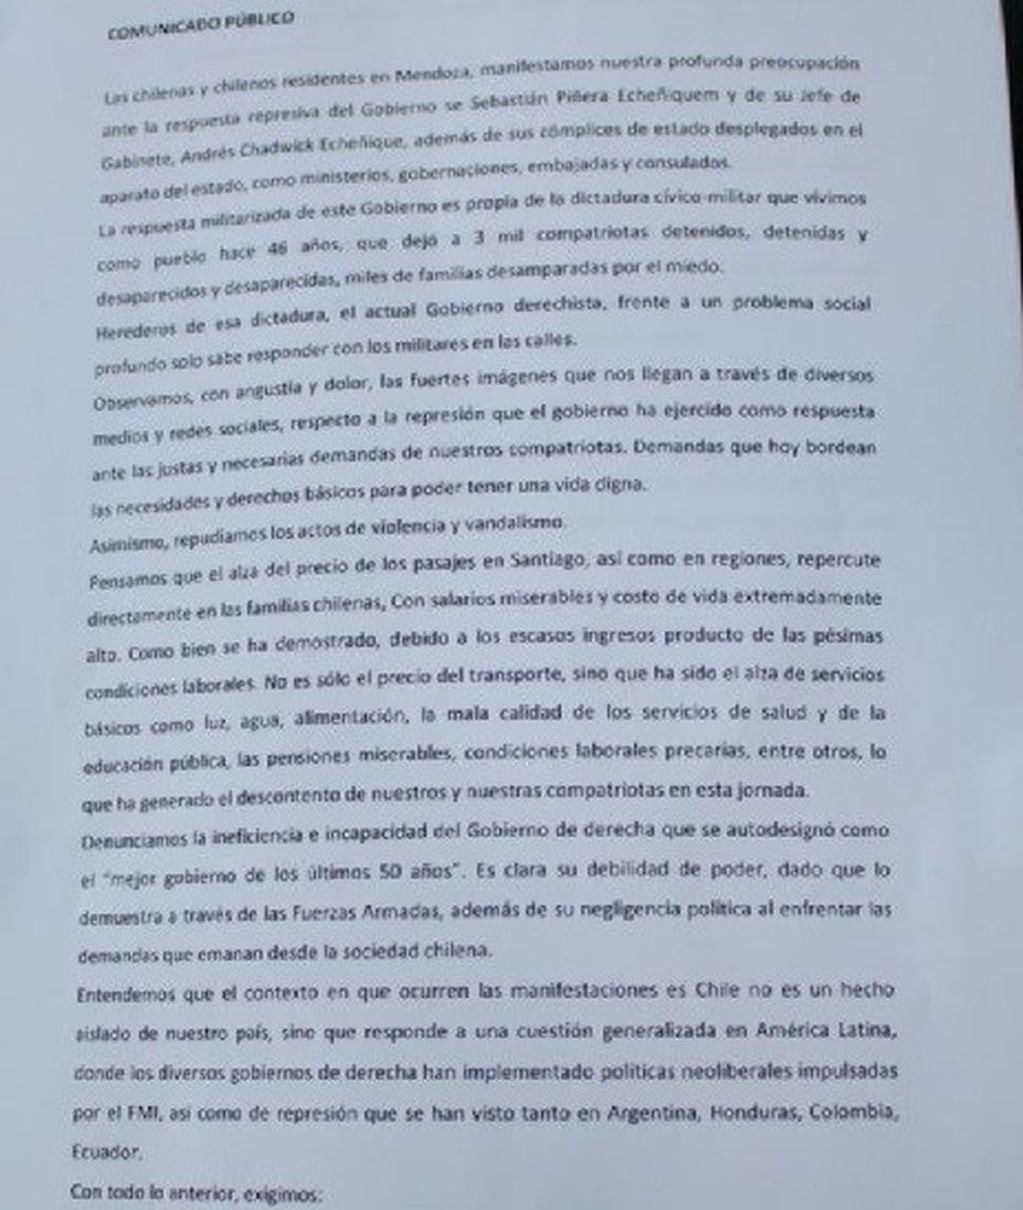 El documento presentado este lunes por los manifestantes chilenos en Mendoza.